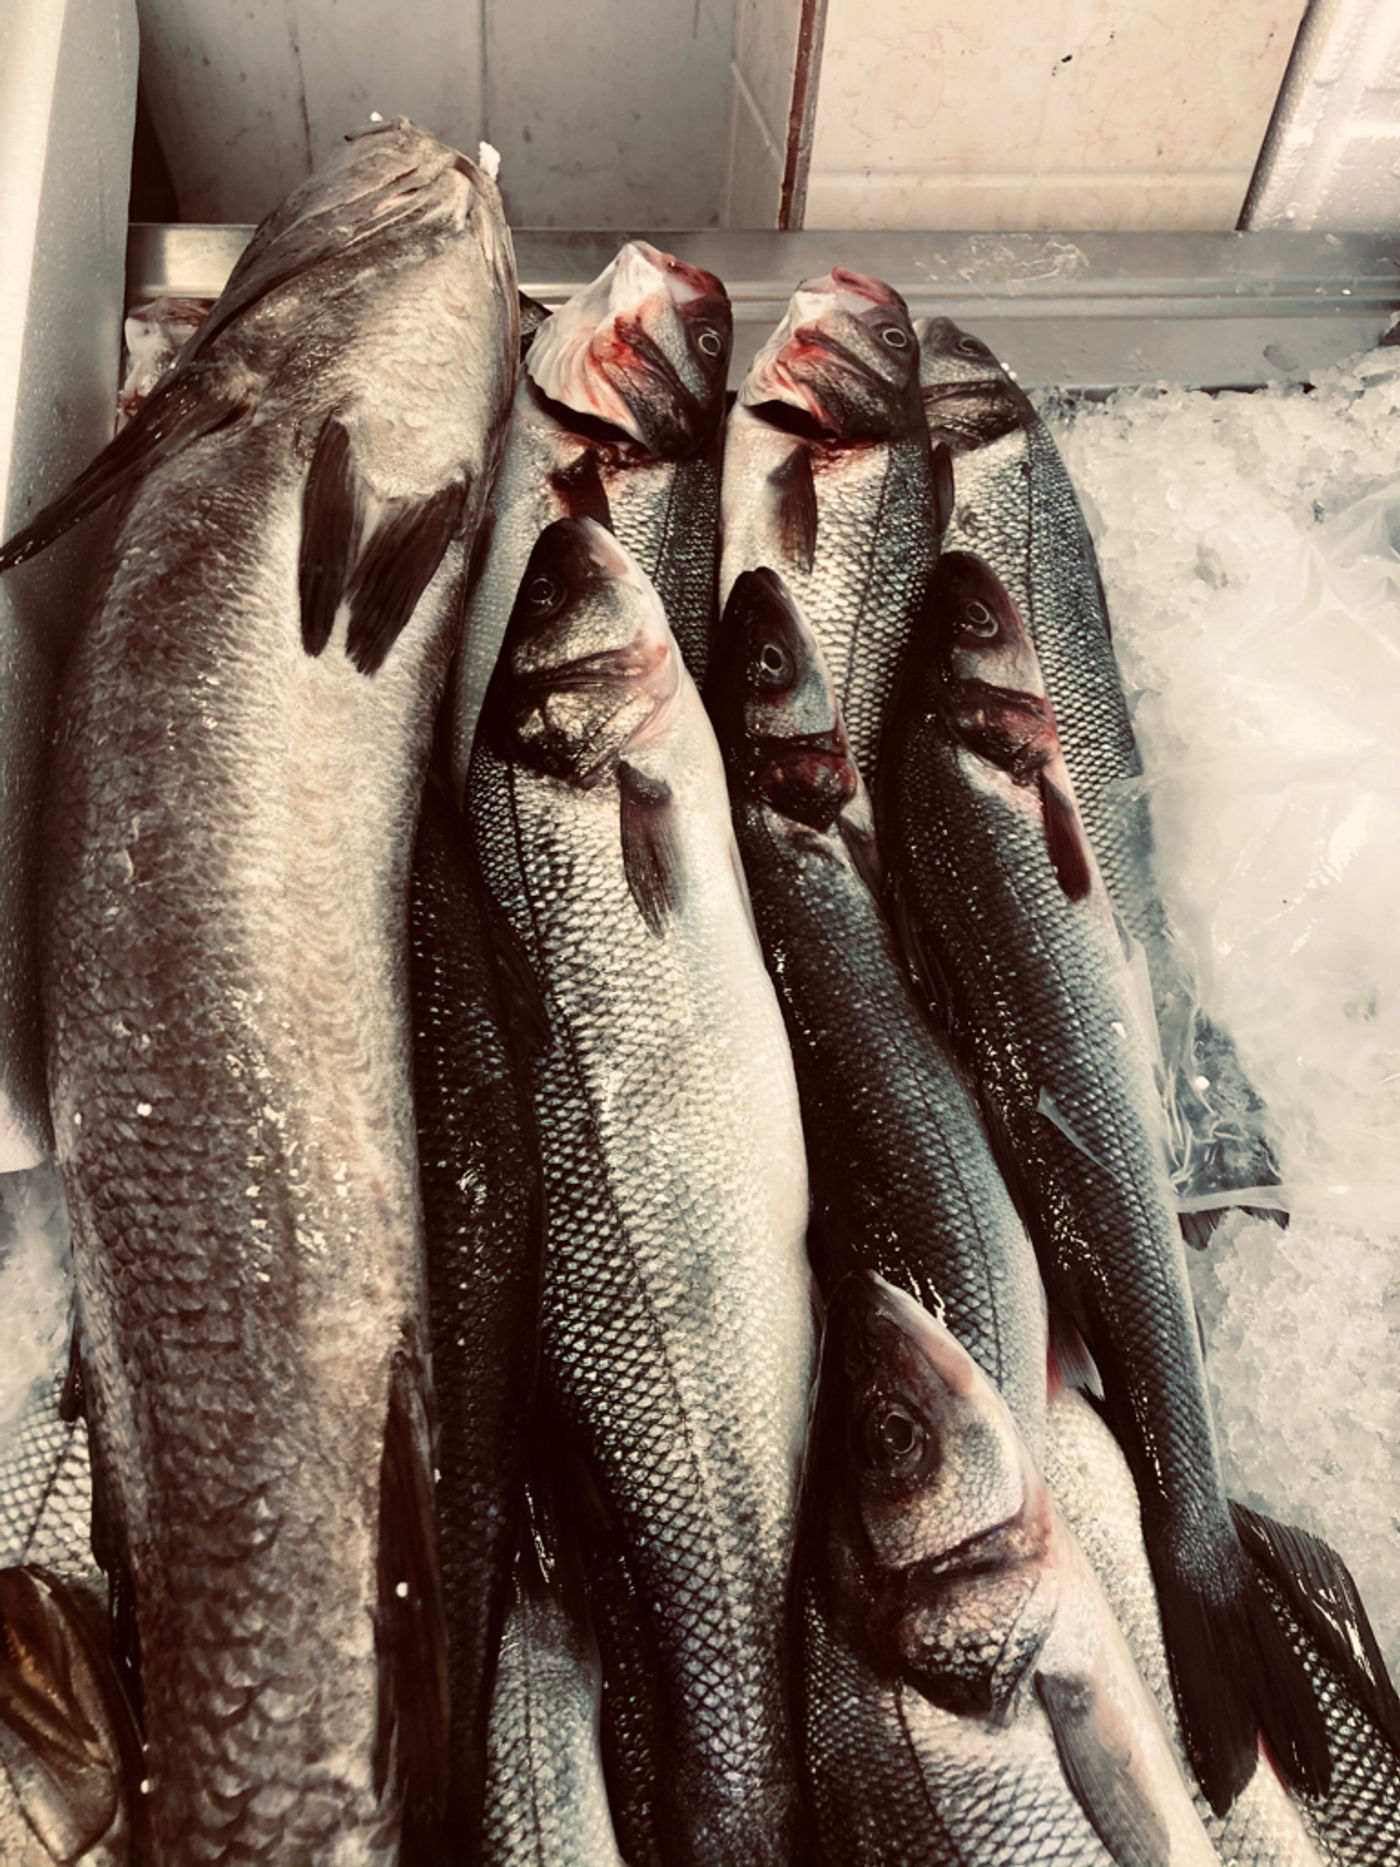 Fresh fish